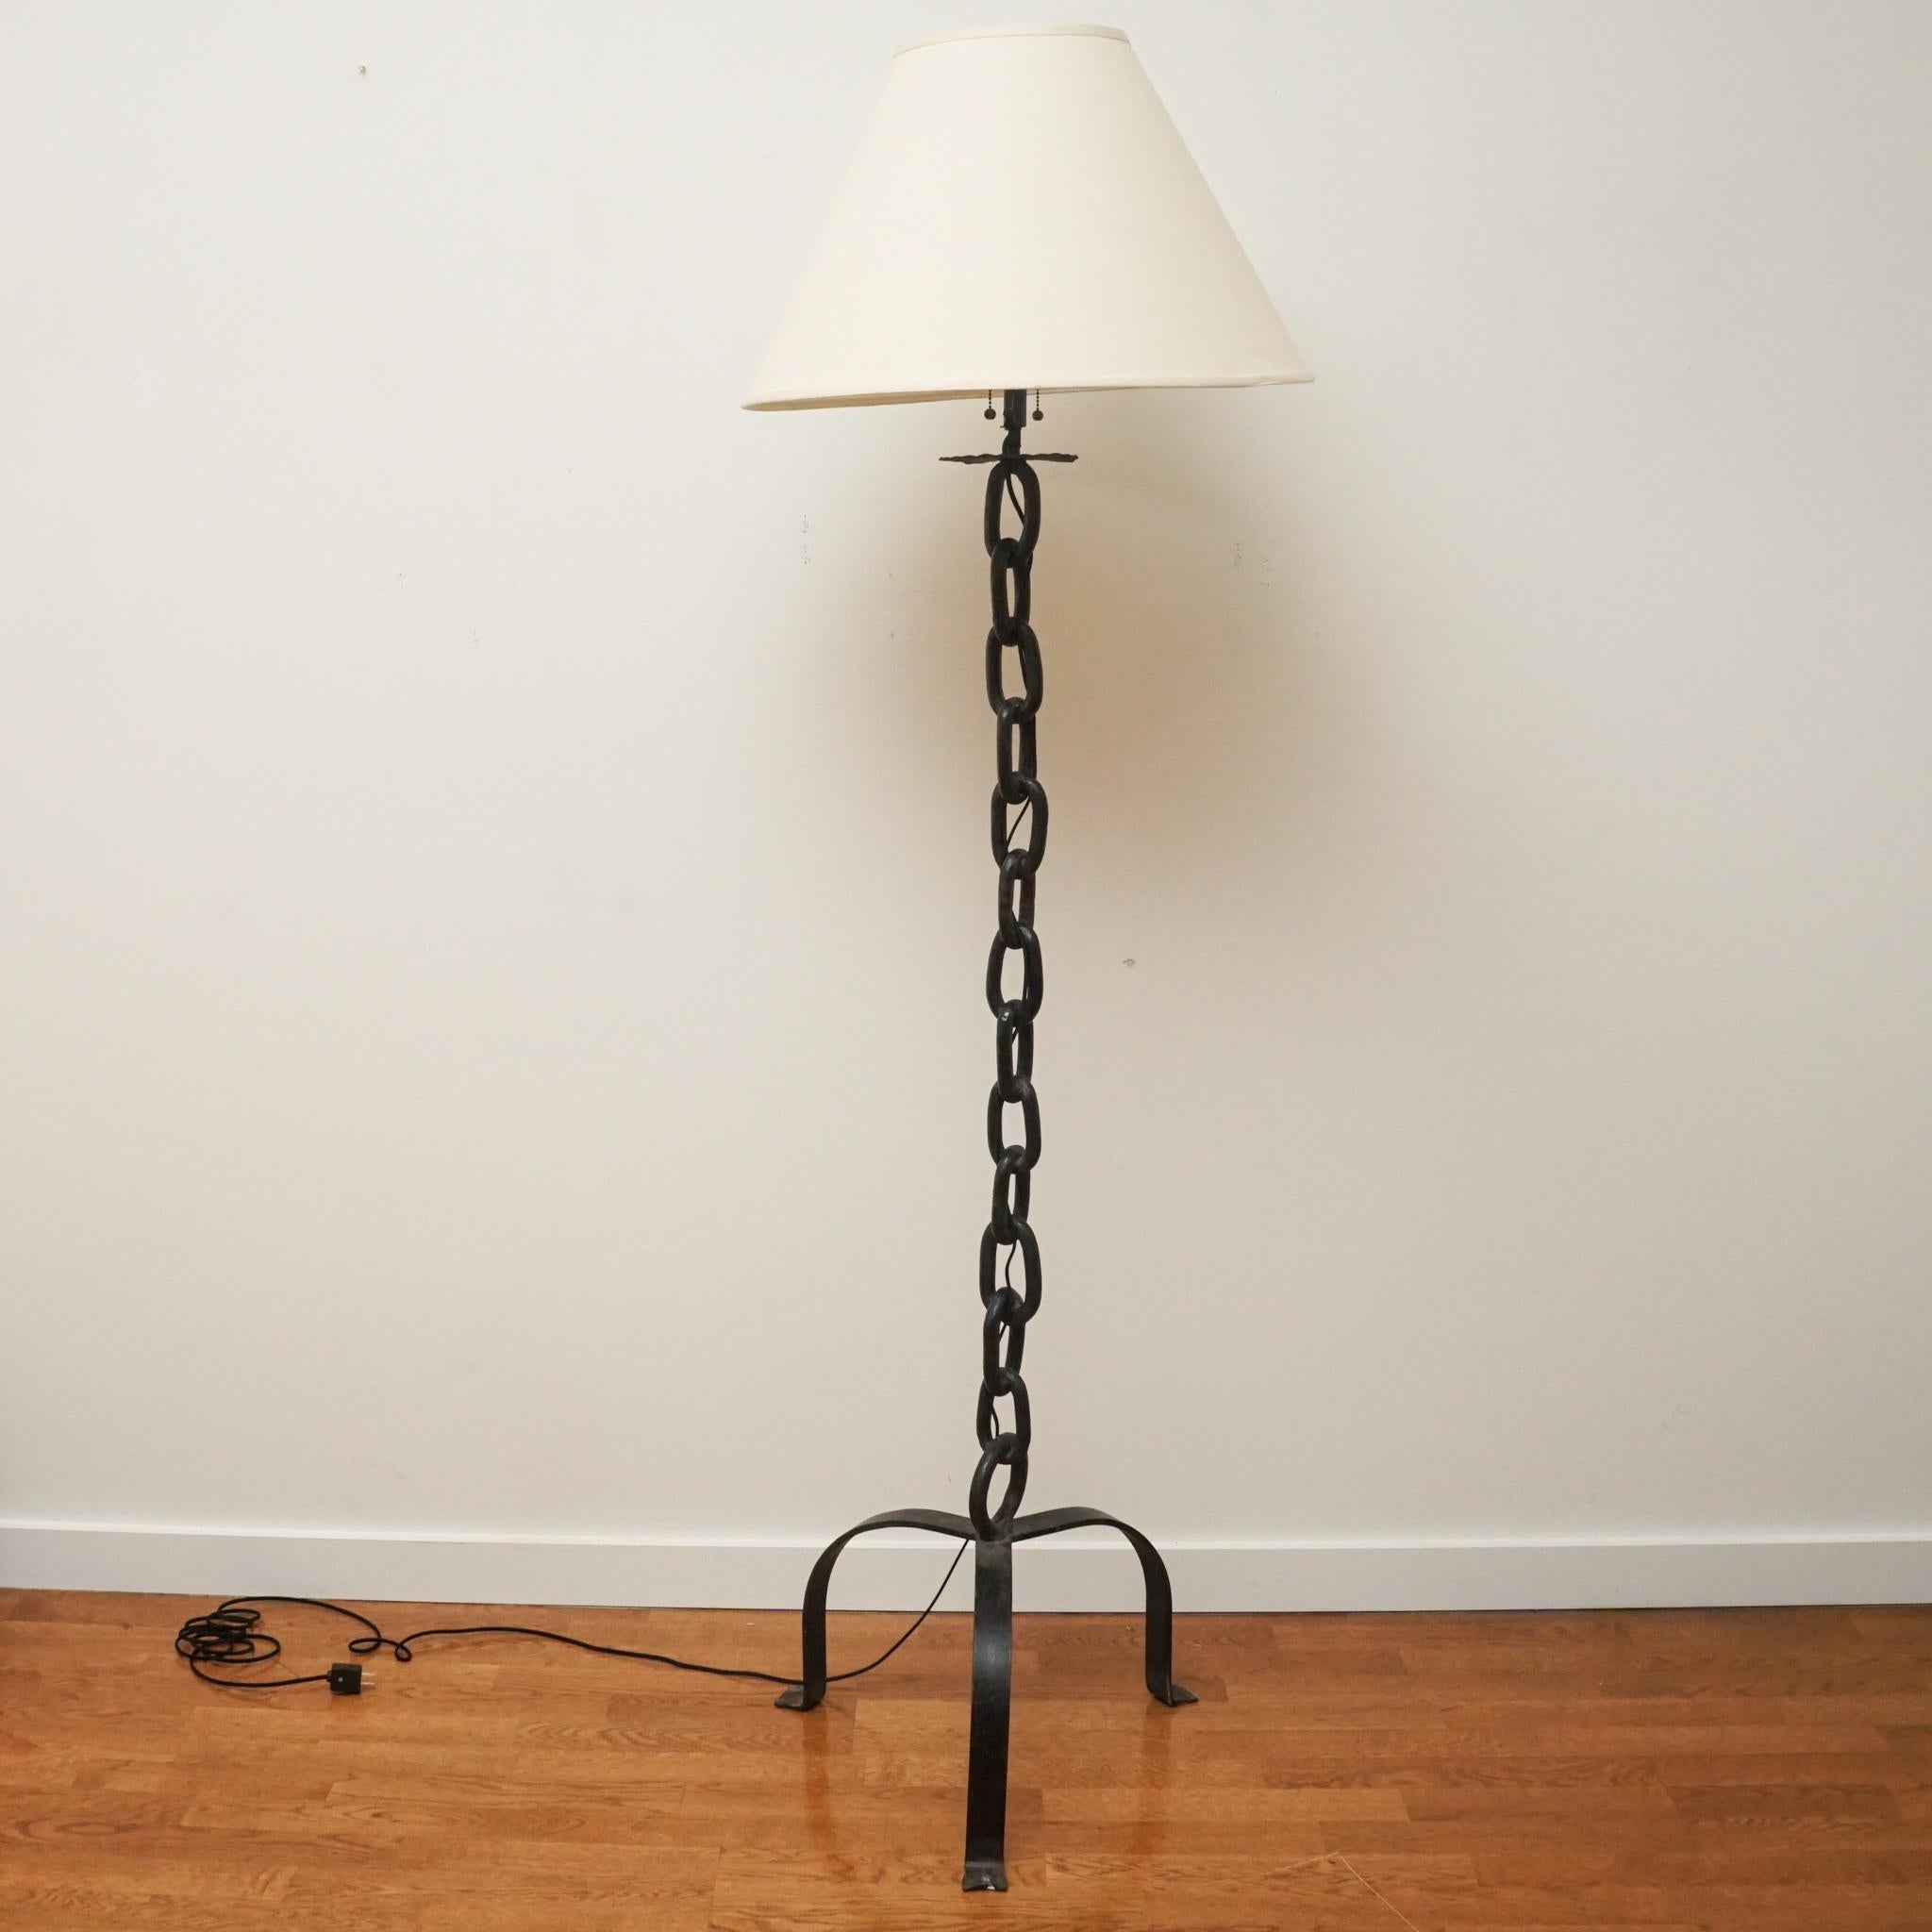 Ce lampadaire à chaîne vintage a été découvert lors d'un voyage d'achat à Paris. Fabriqués dans les années 1950, les maillons de chaîne verticaux en fer soudé sont soutenus par une base en fer tripode. La lampe a été recâblée et équipée d'un